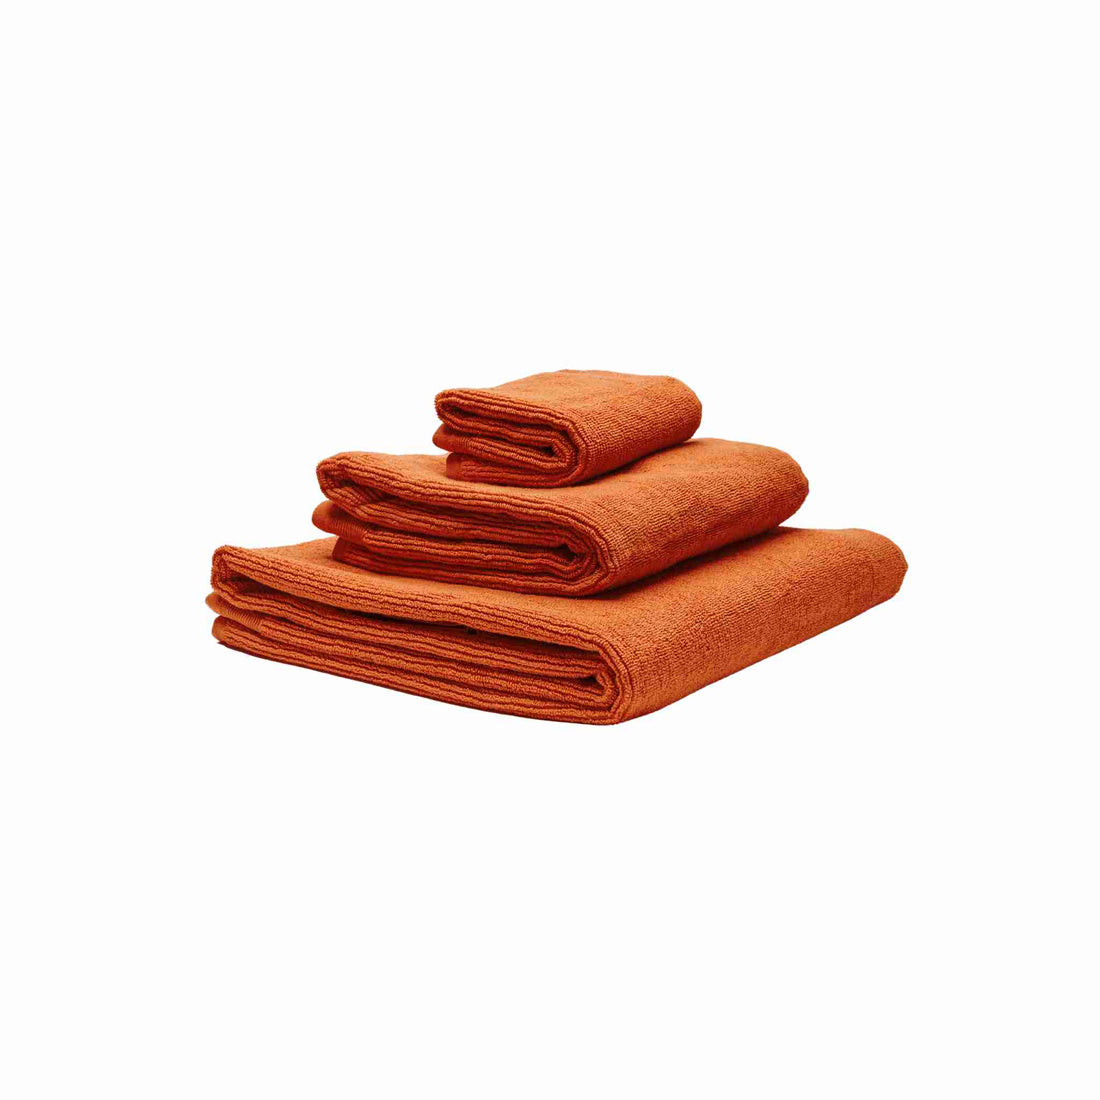 Økologiske håndklæder i farven orange